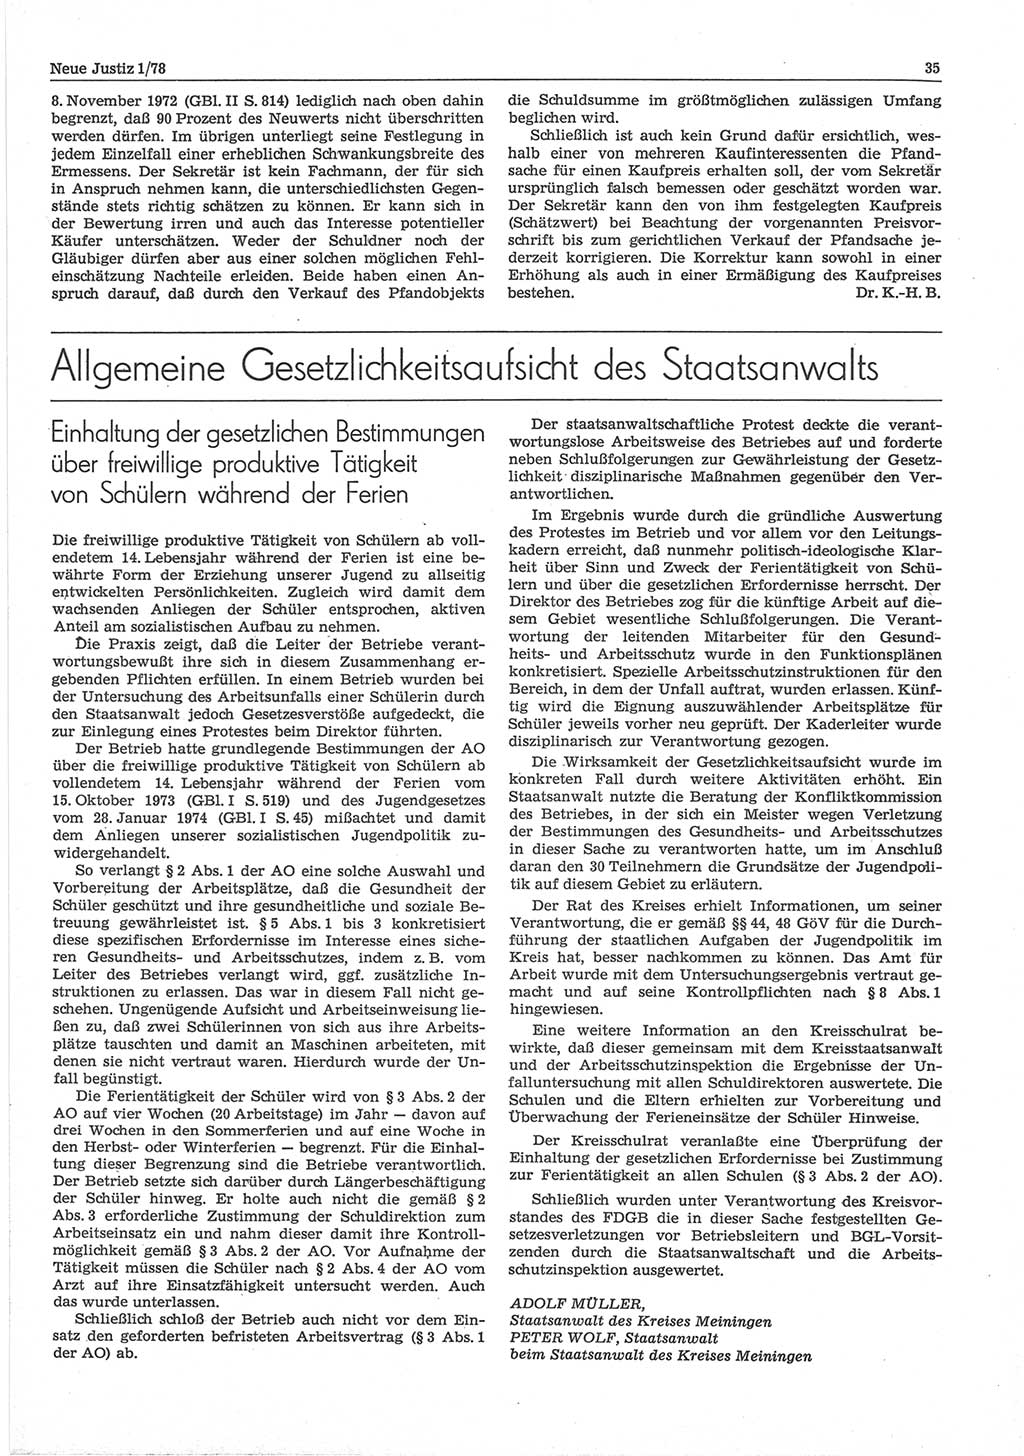 Neue Justiz (NJ), Zeitschrift für sozialistisches Recht und Gesetzlichkeit [Deutsche Demokratische Republik (DDR)], 32. Jahrgang 1978, Seite 35 (NJ DDR 1978, S. 35)